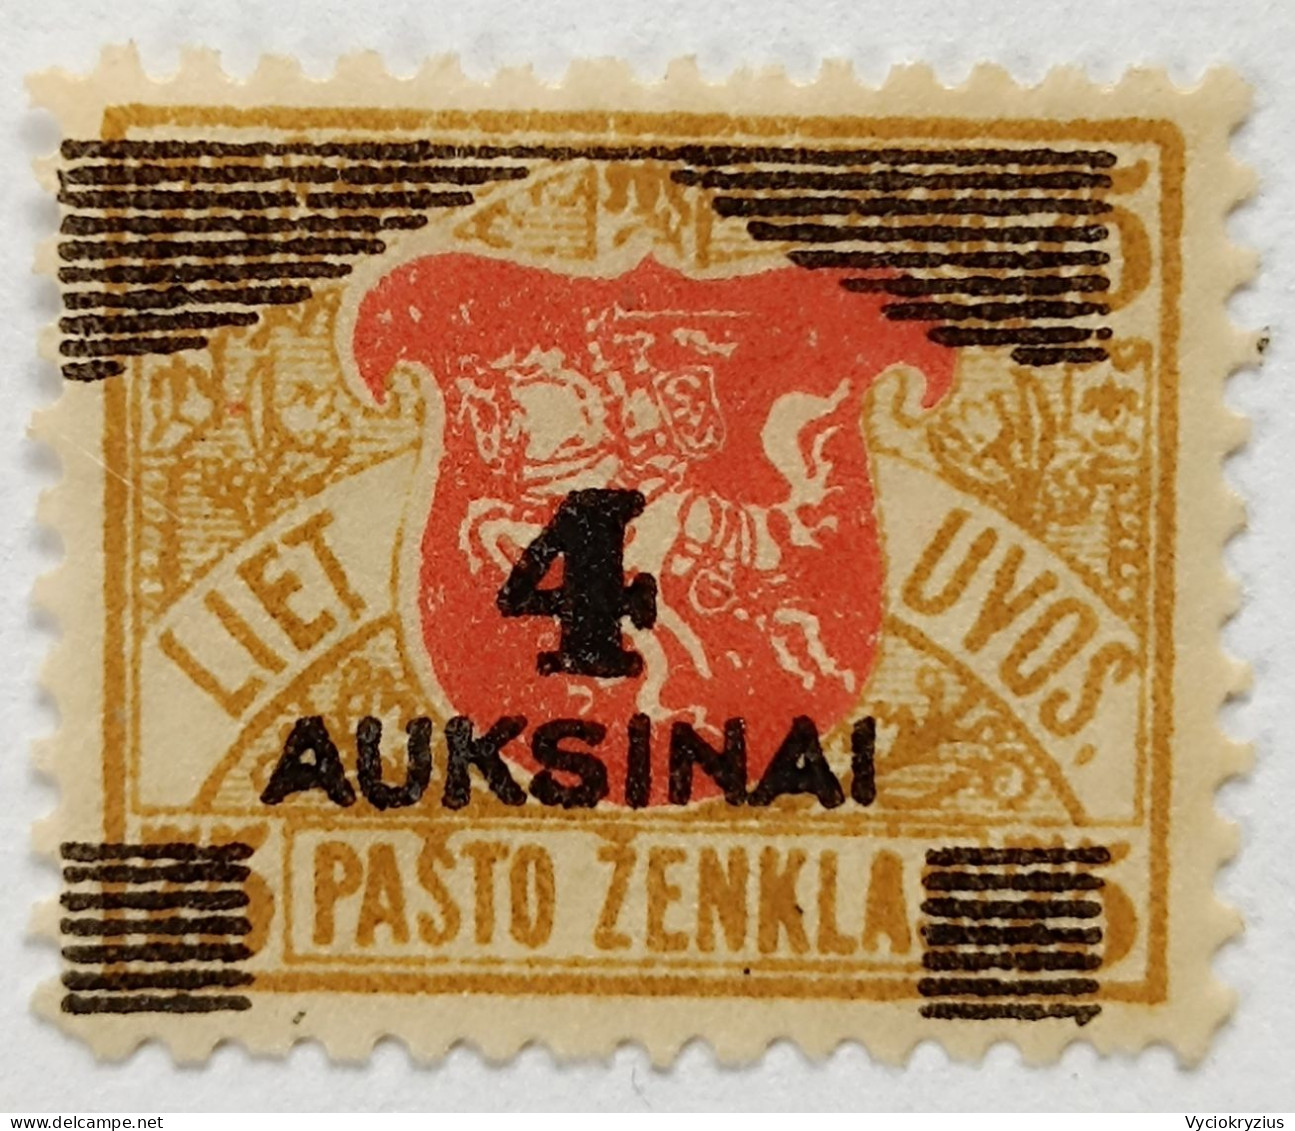 LITHUANIA LIETUVA 4 Auksinai 1922 Overprint - Litauen